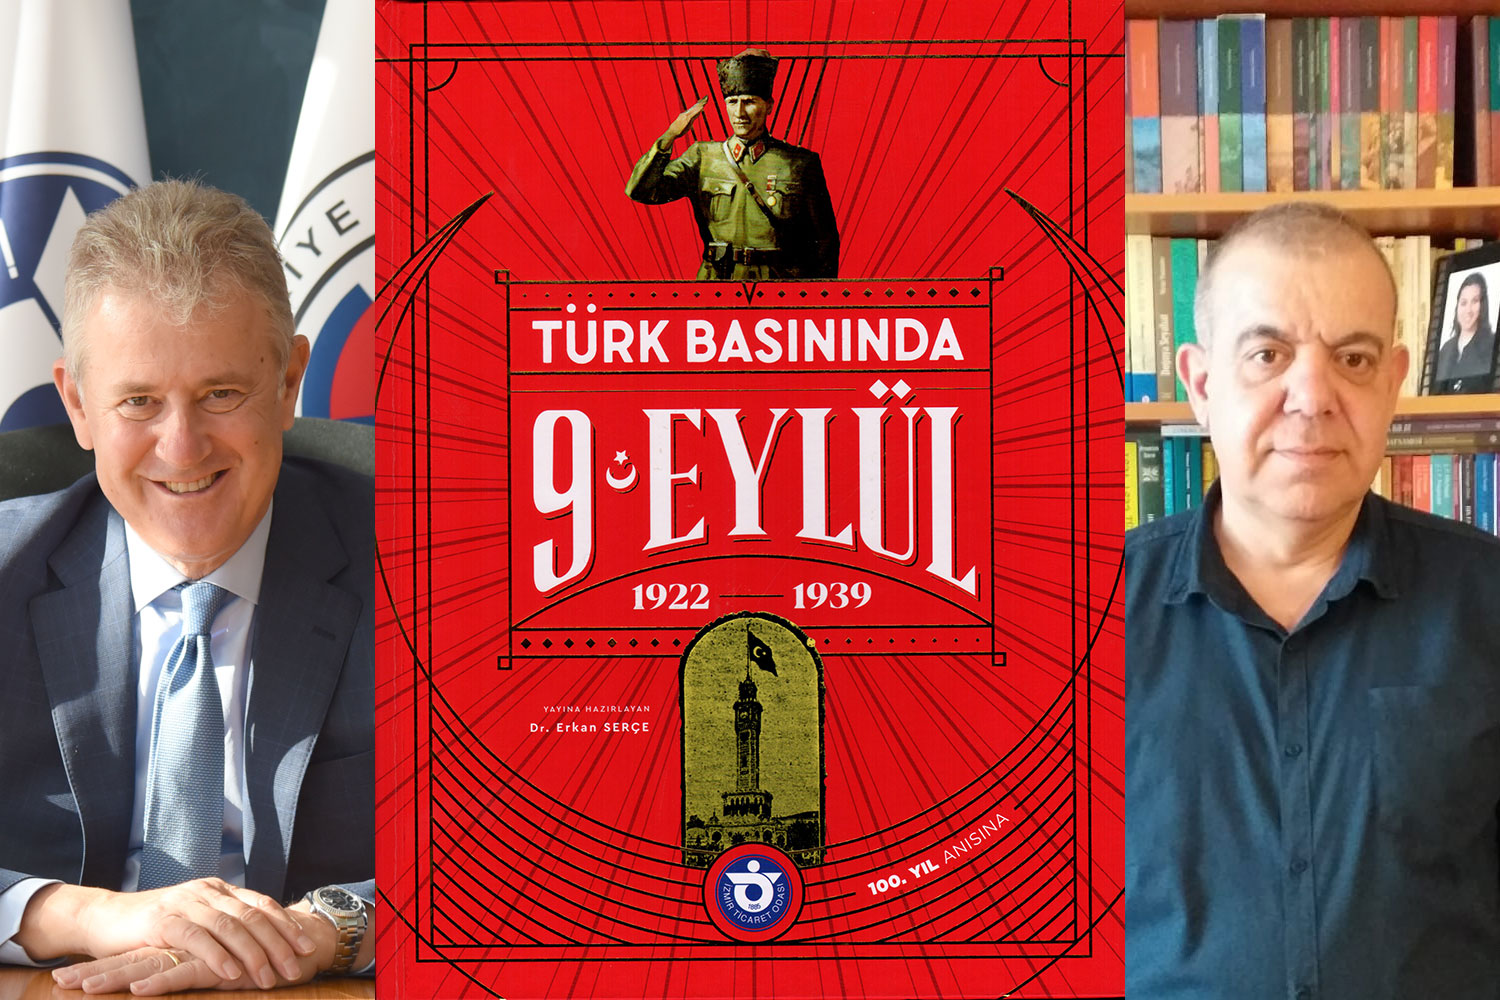 İzTO'nun Türk Basınında 9 Eylül 1922-1939 kitabı yayımlandı 